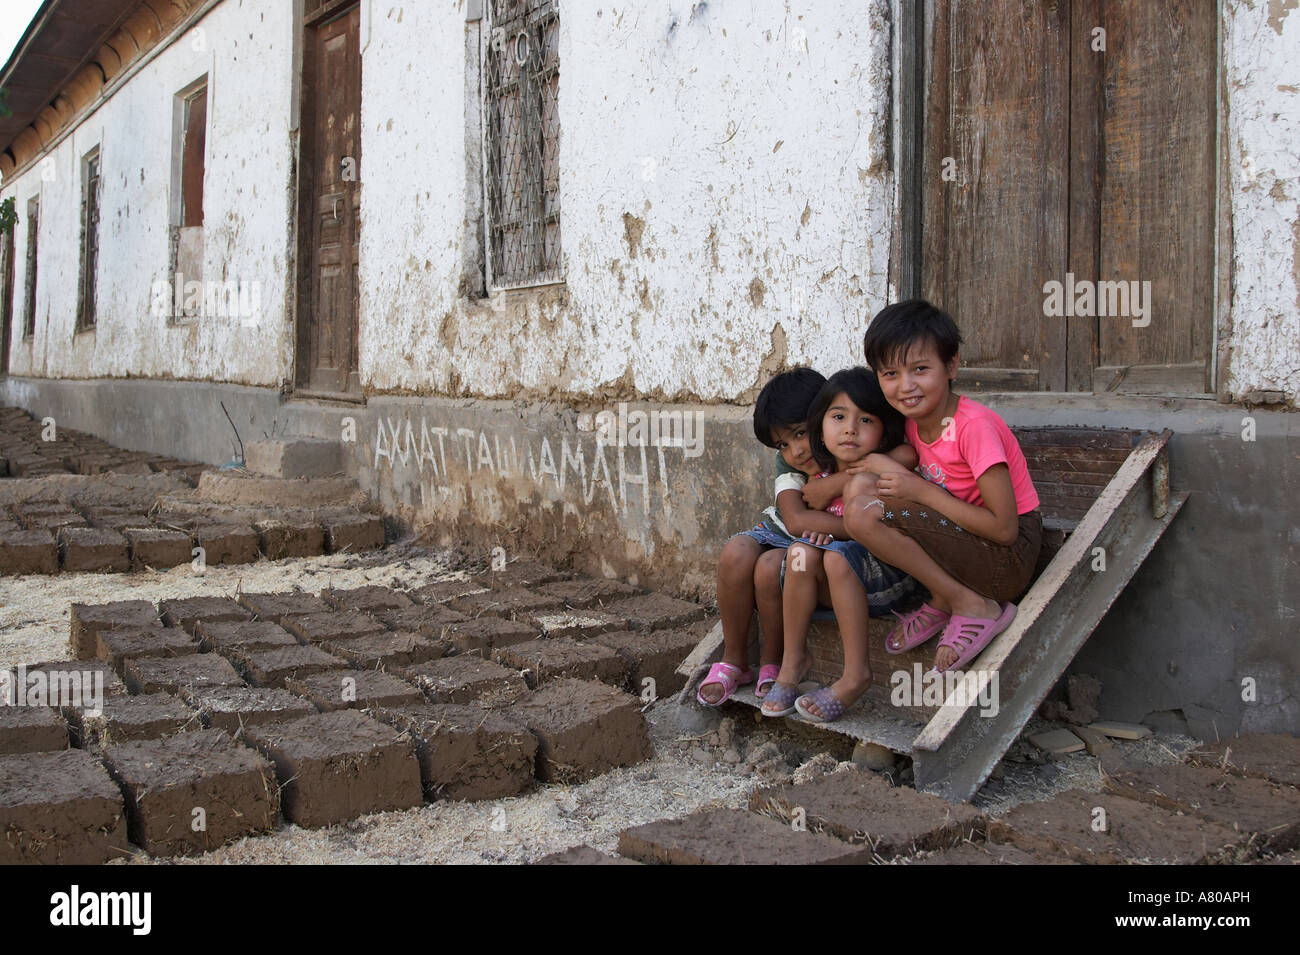 Girls Sitting Next To Drying Mud Bricks, Tashkent Stock Photo